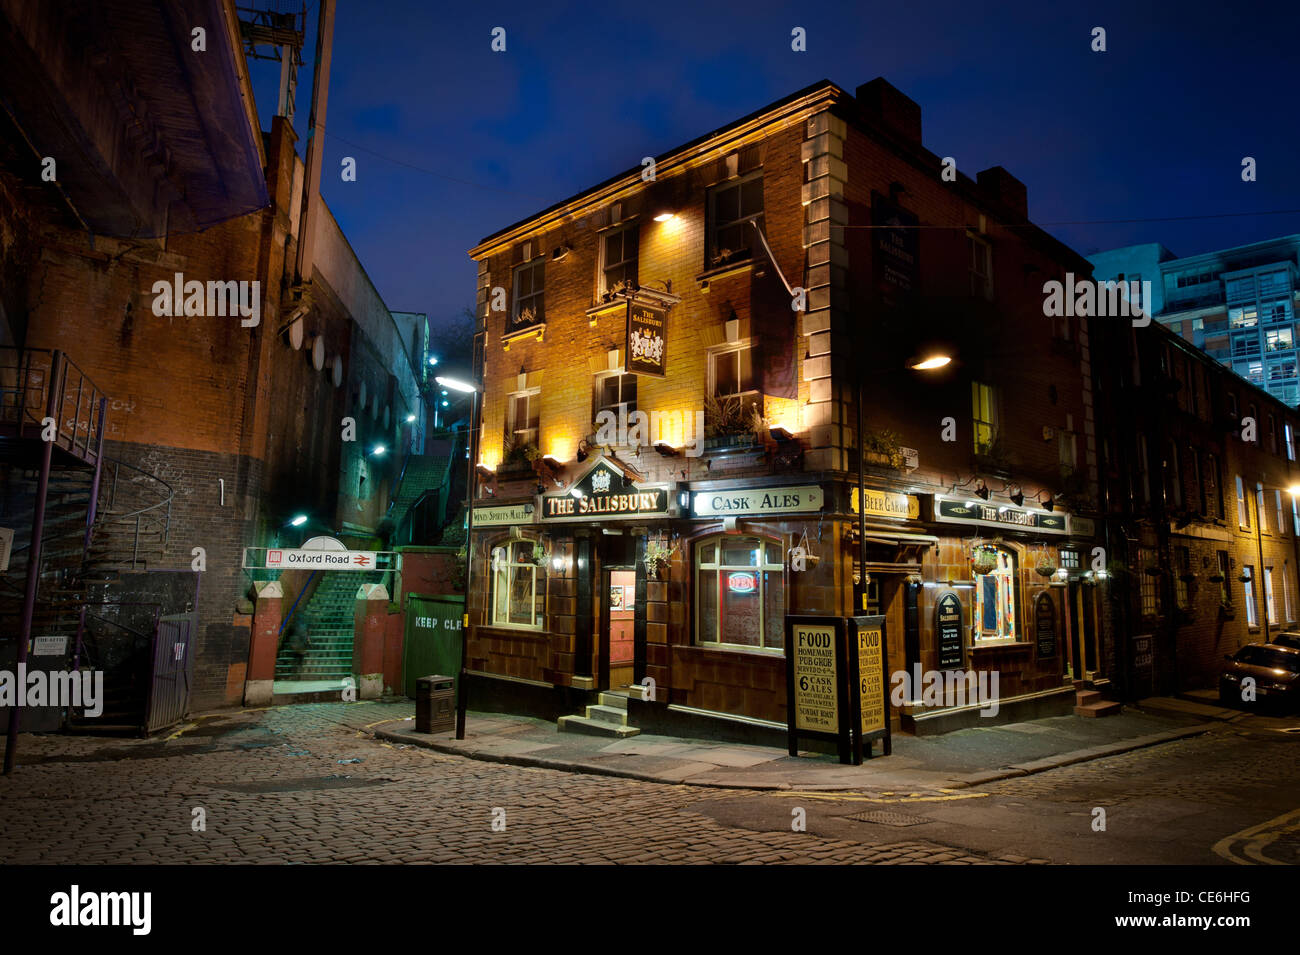 Le Salisbury pub près de la gare d'Oxford Road, Manchester, prises de nuit. Banque D'Images